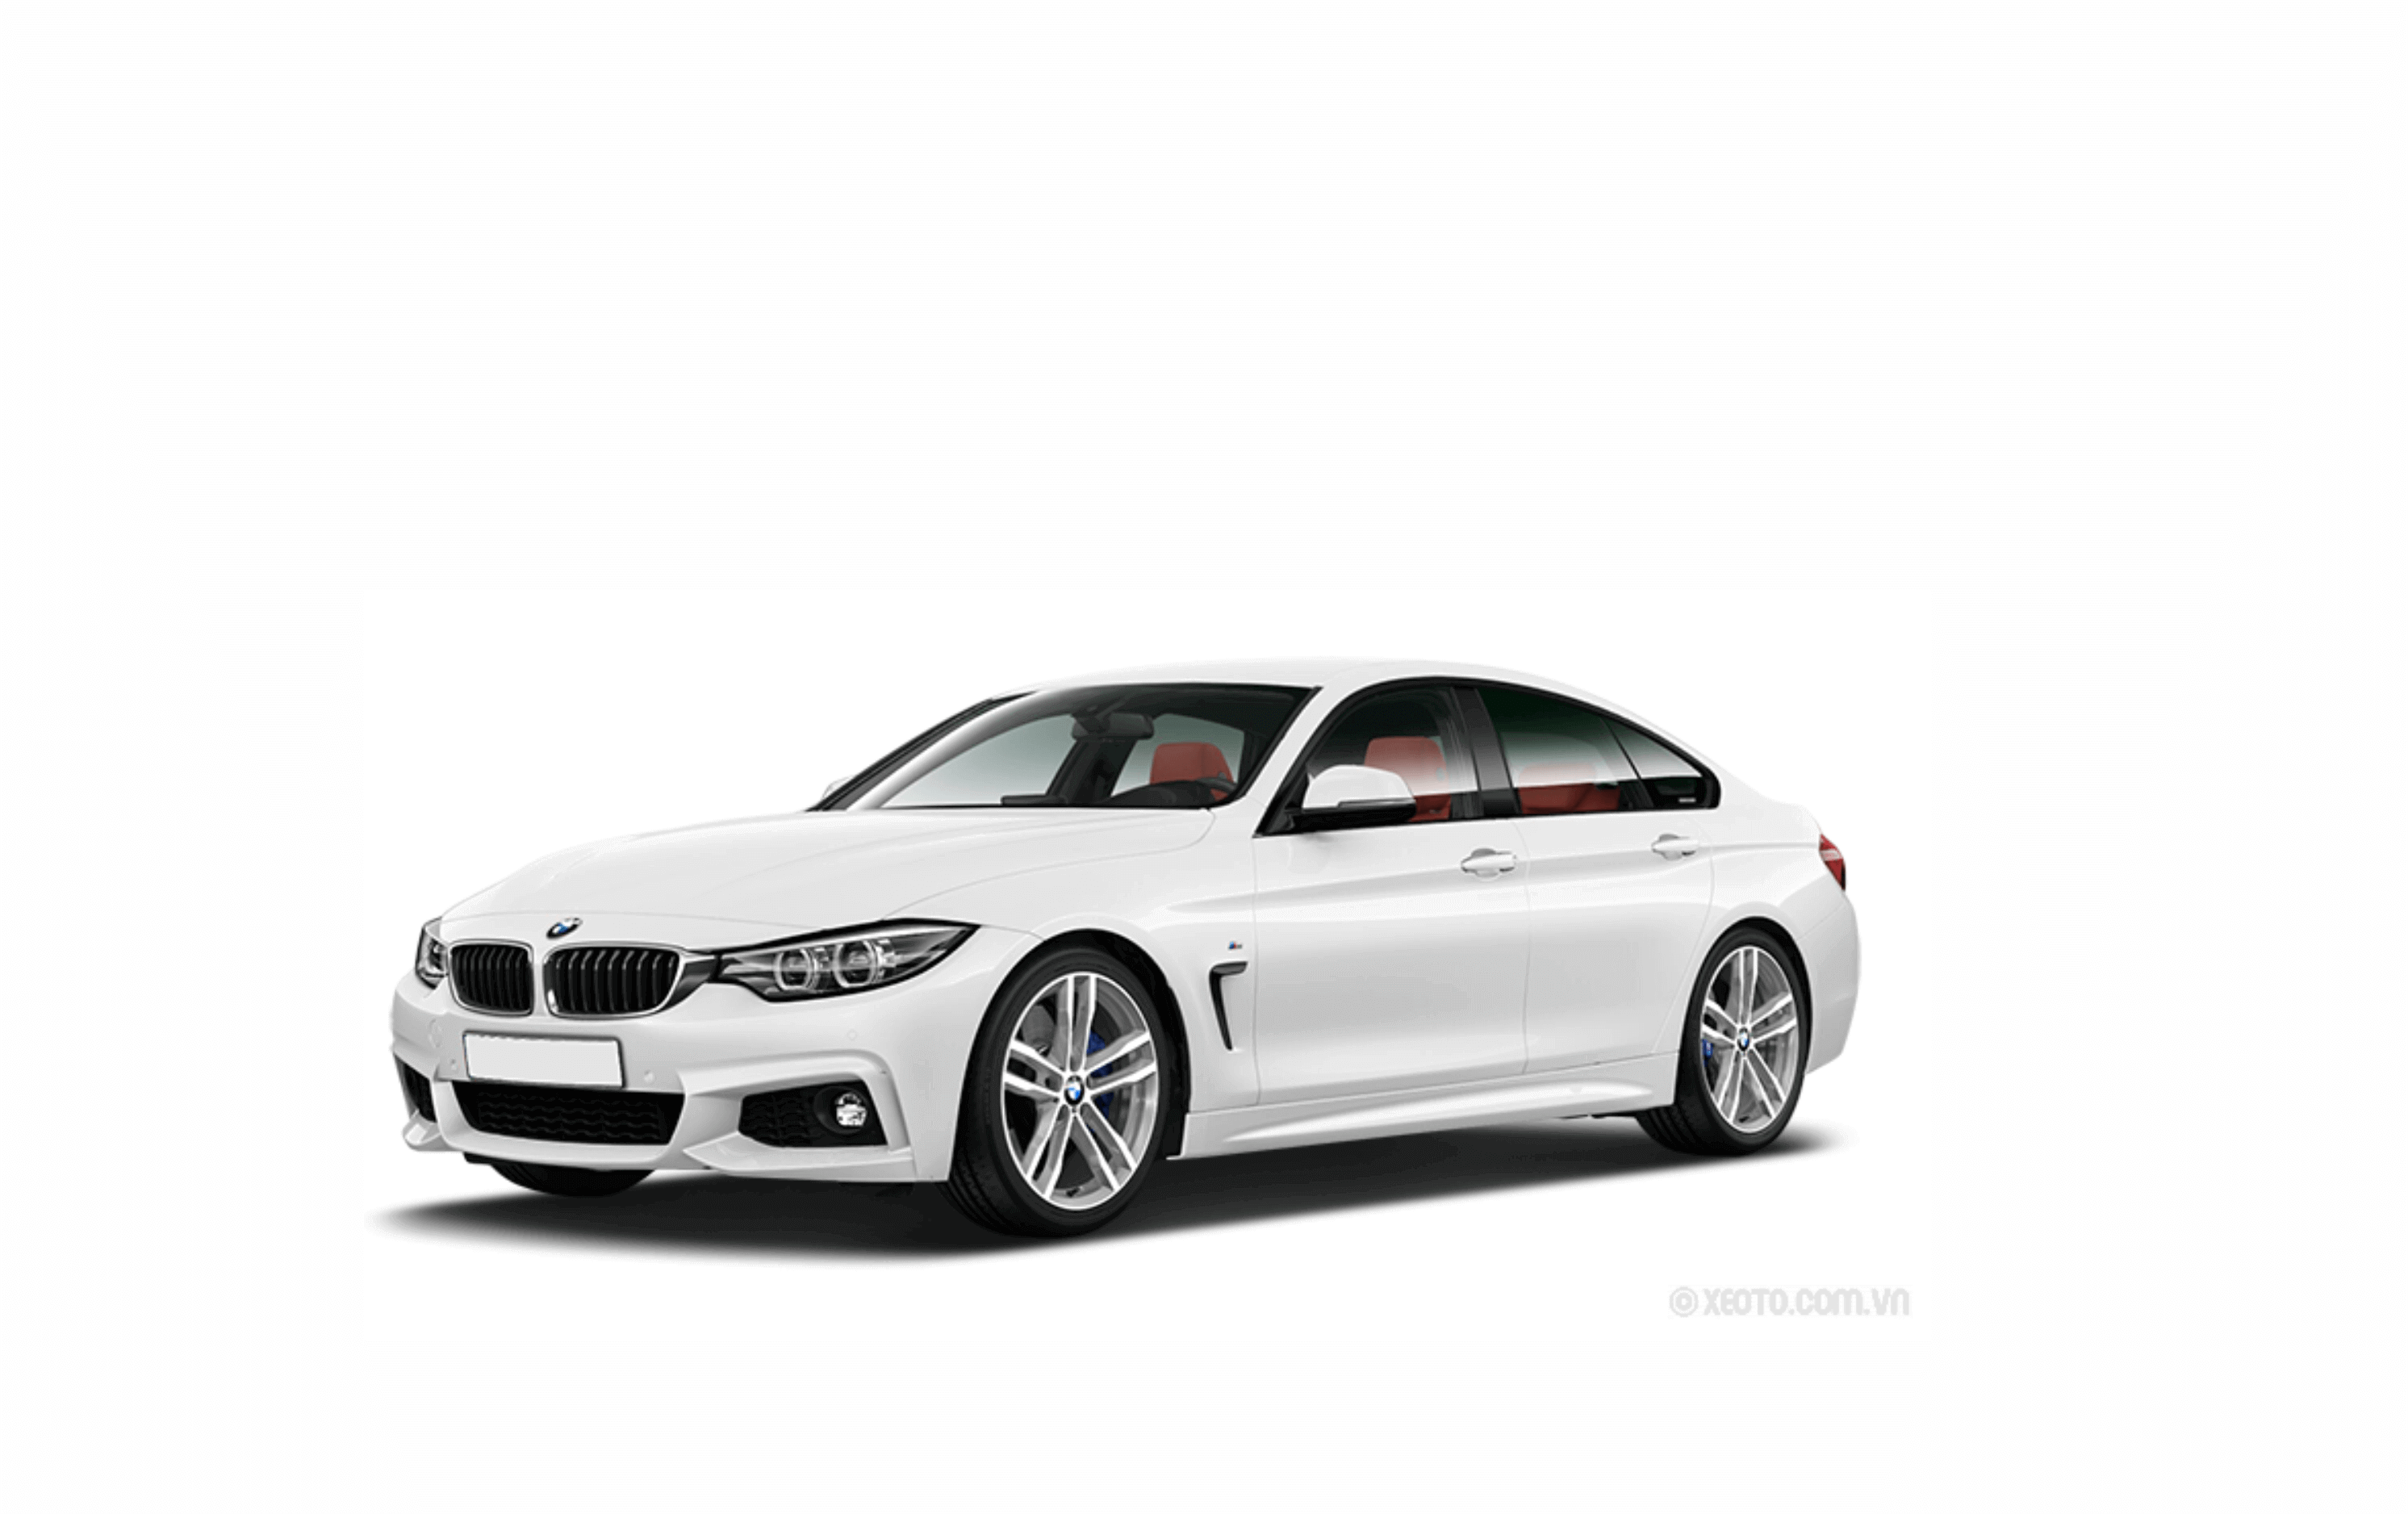 Đánh giá xe BMW 7 Series 2020 nhập khẩu Hạng sang mới nhất